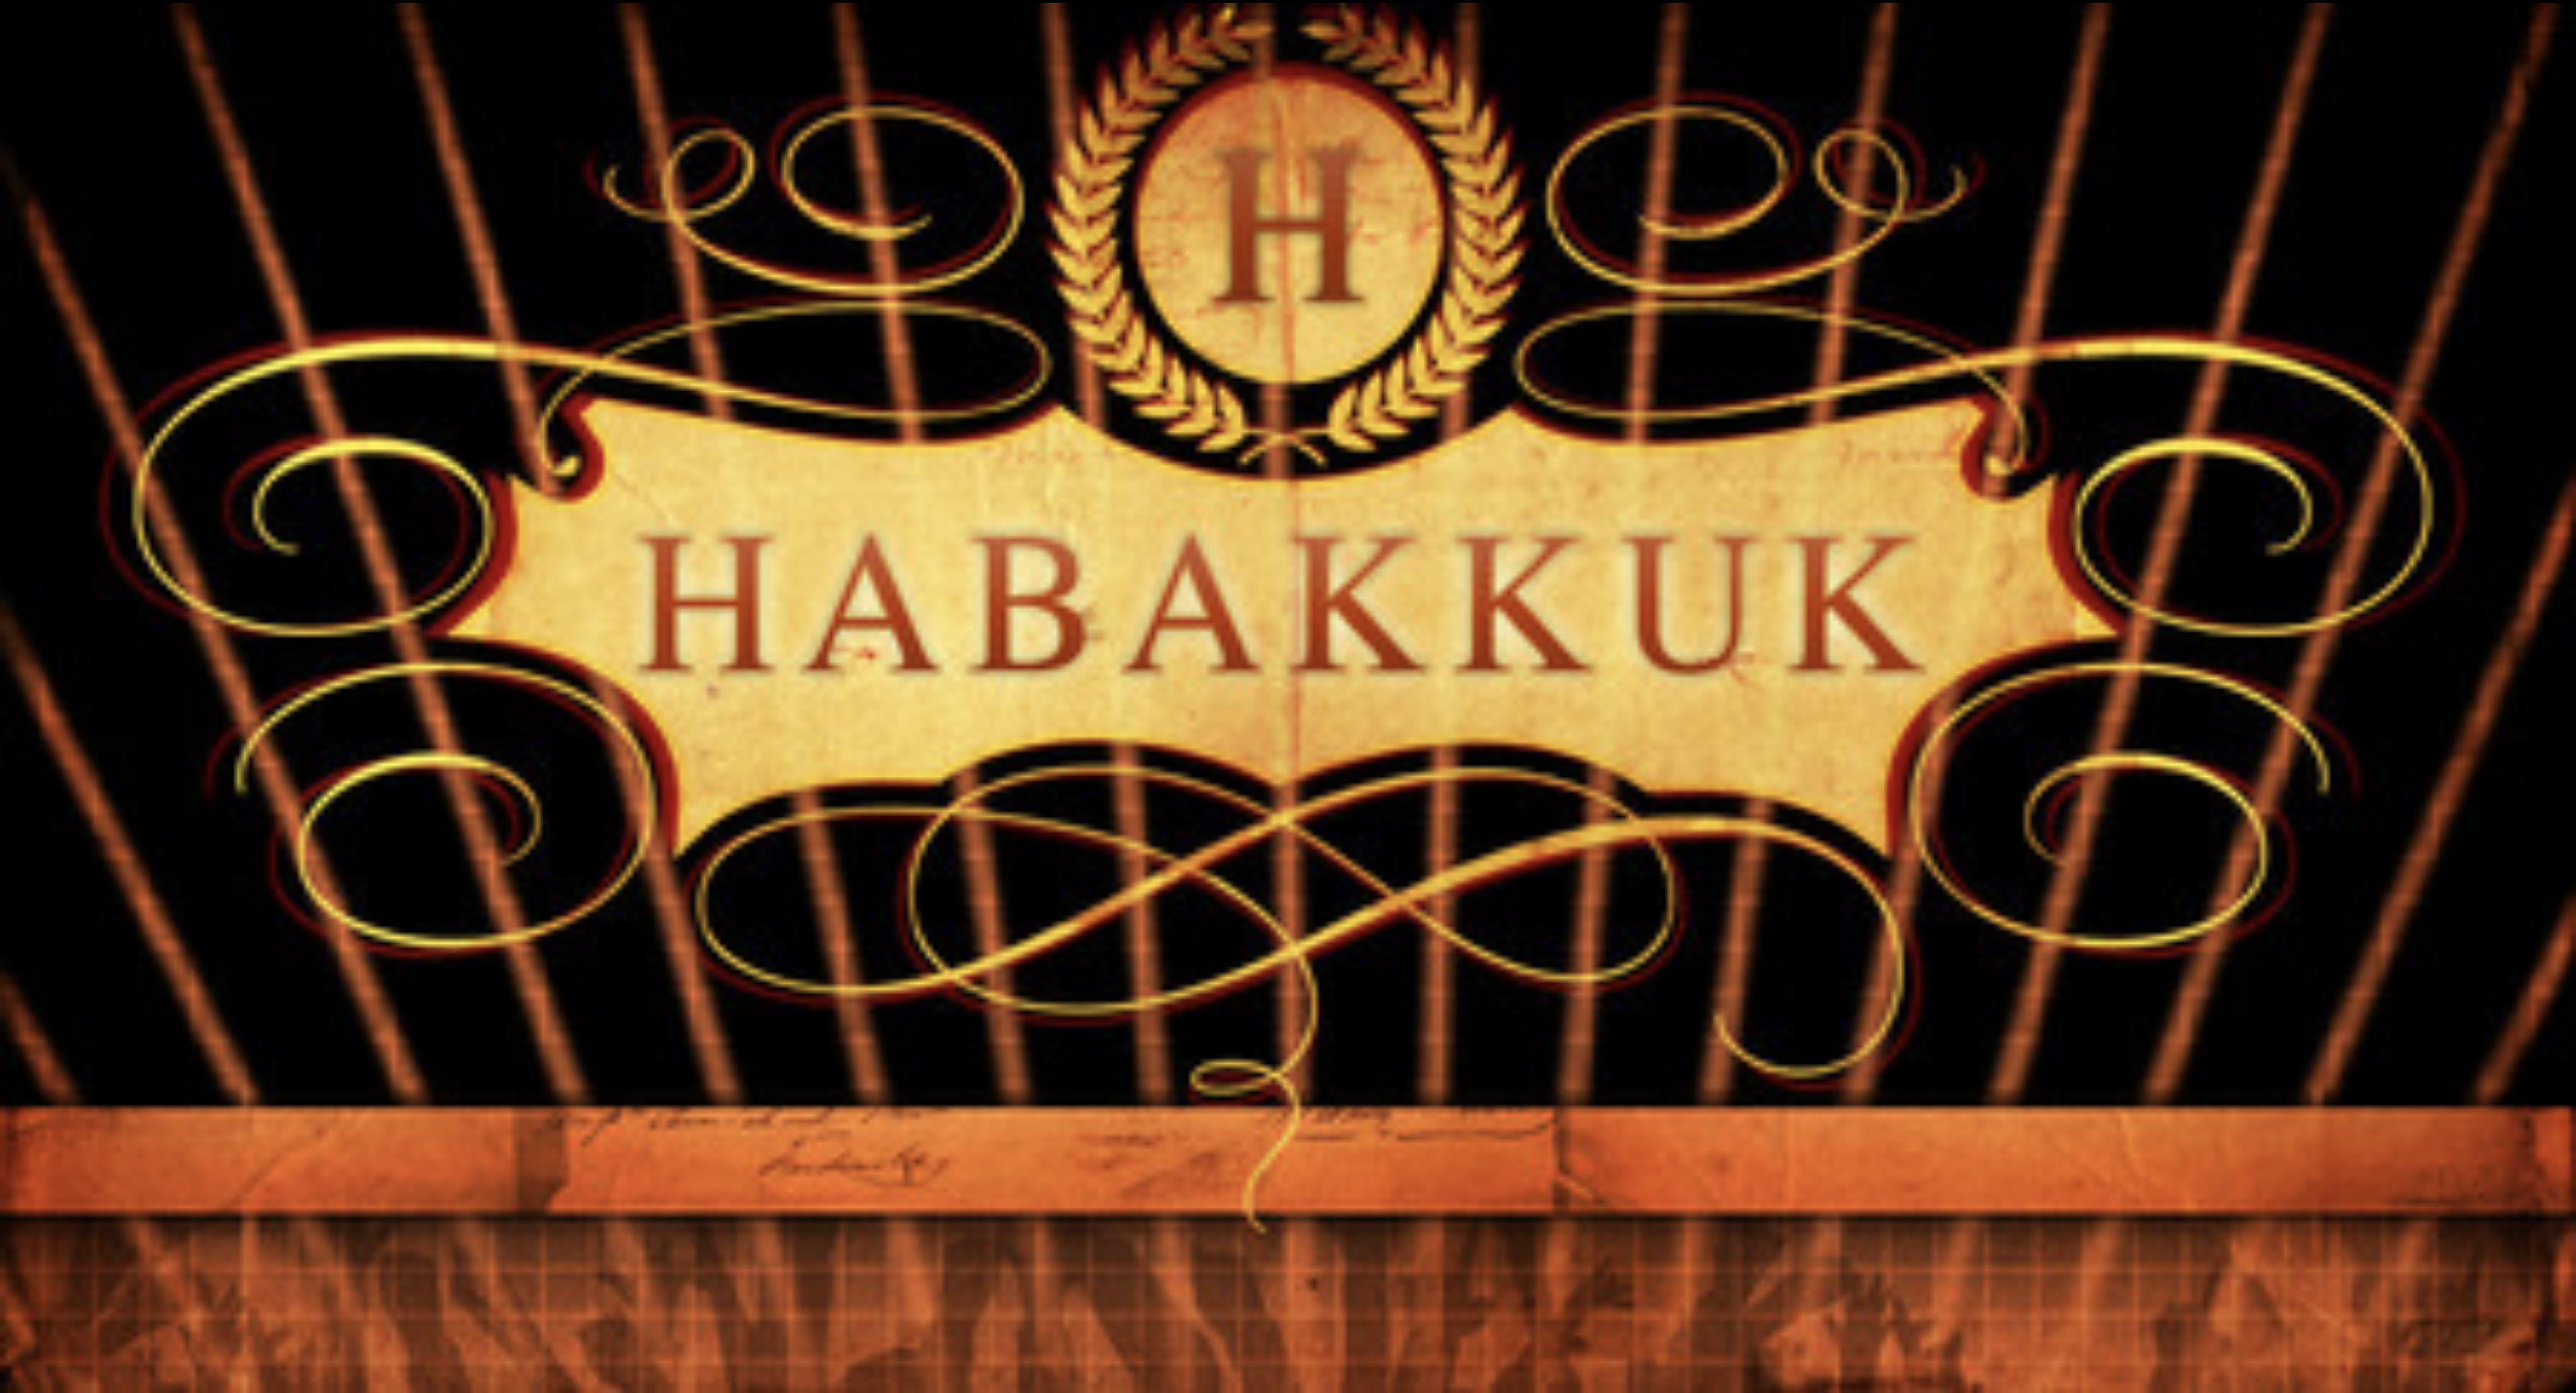 Habakkuk Pt. 1: When the Burden is Great